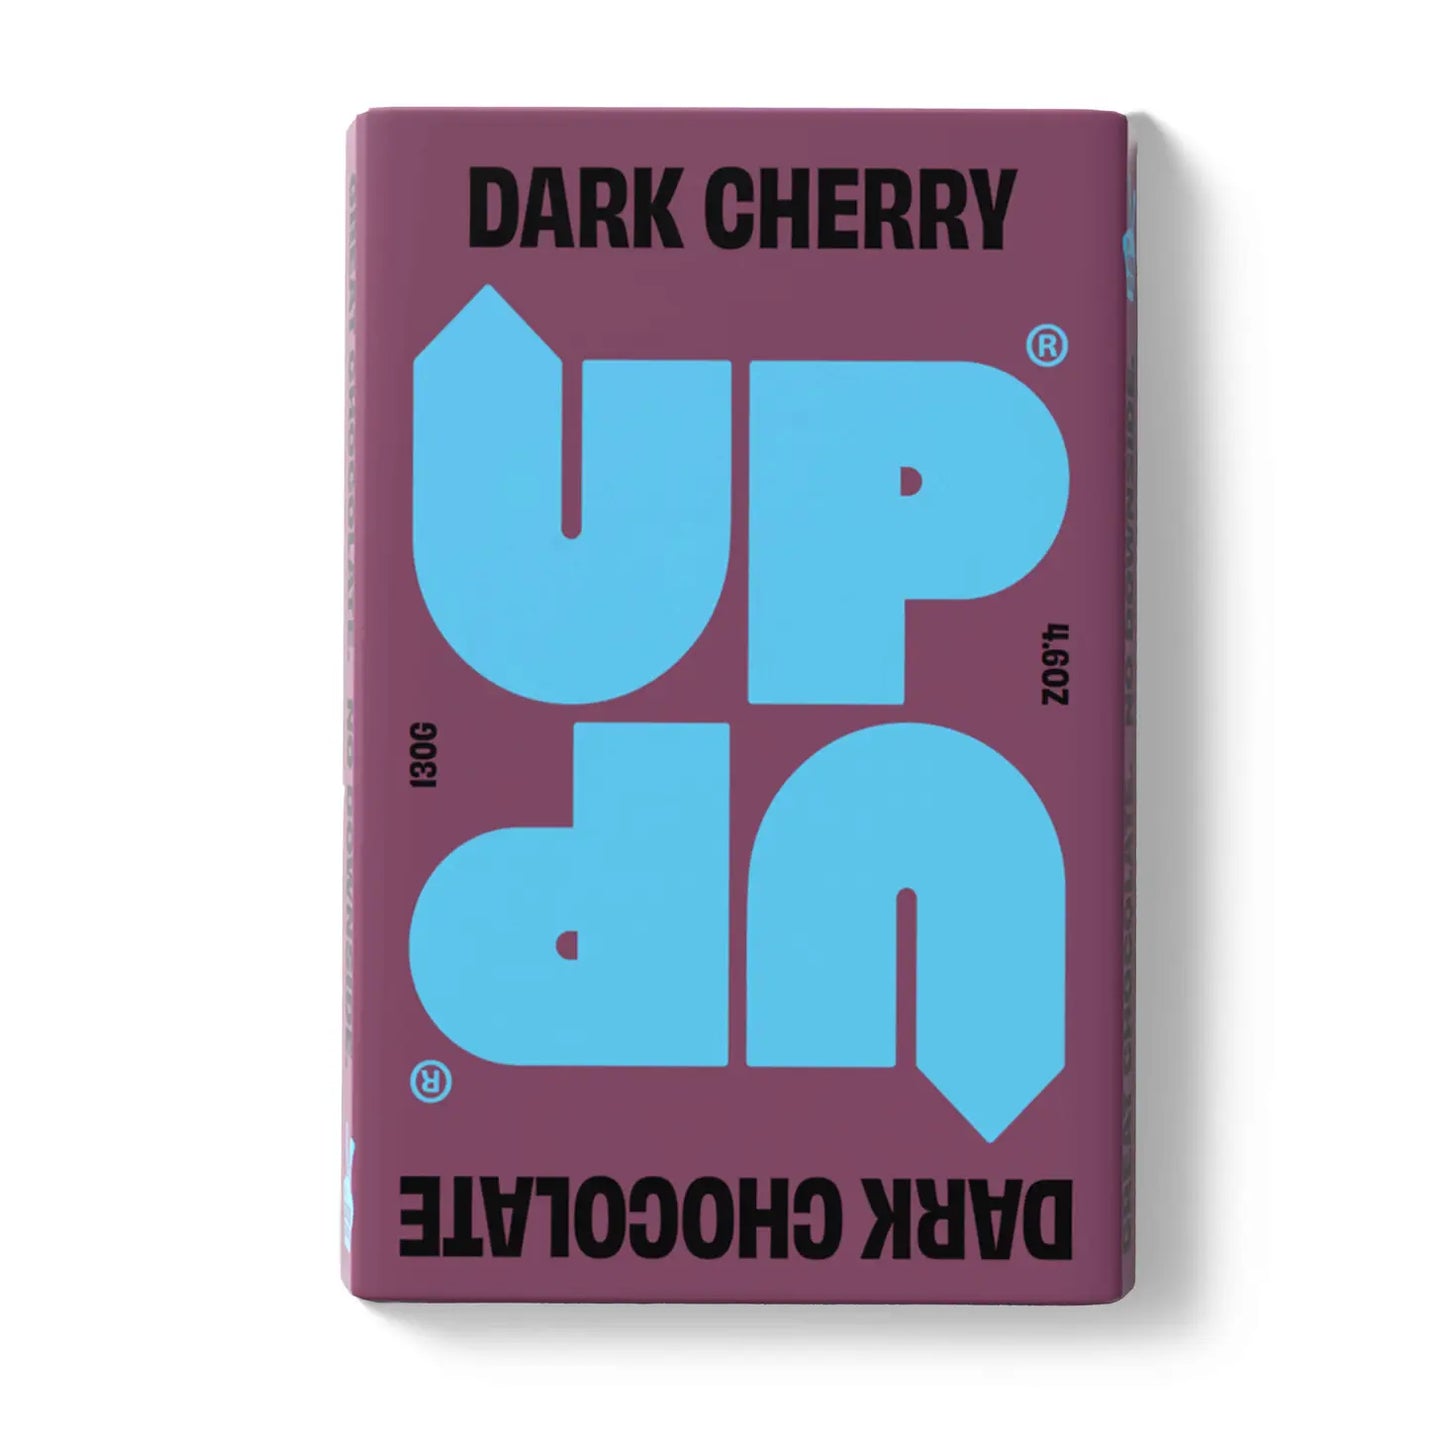 Dark Cherry Dark Chocolate Bar